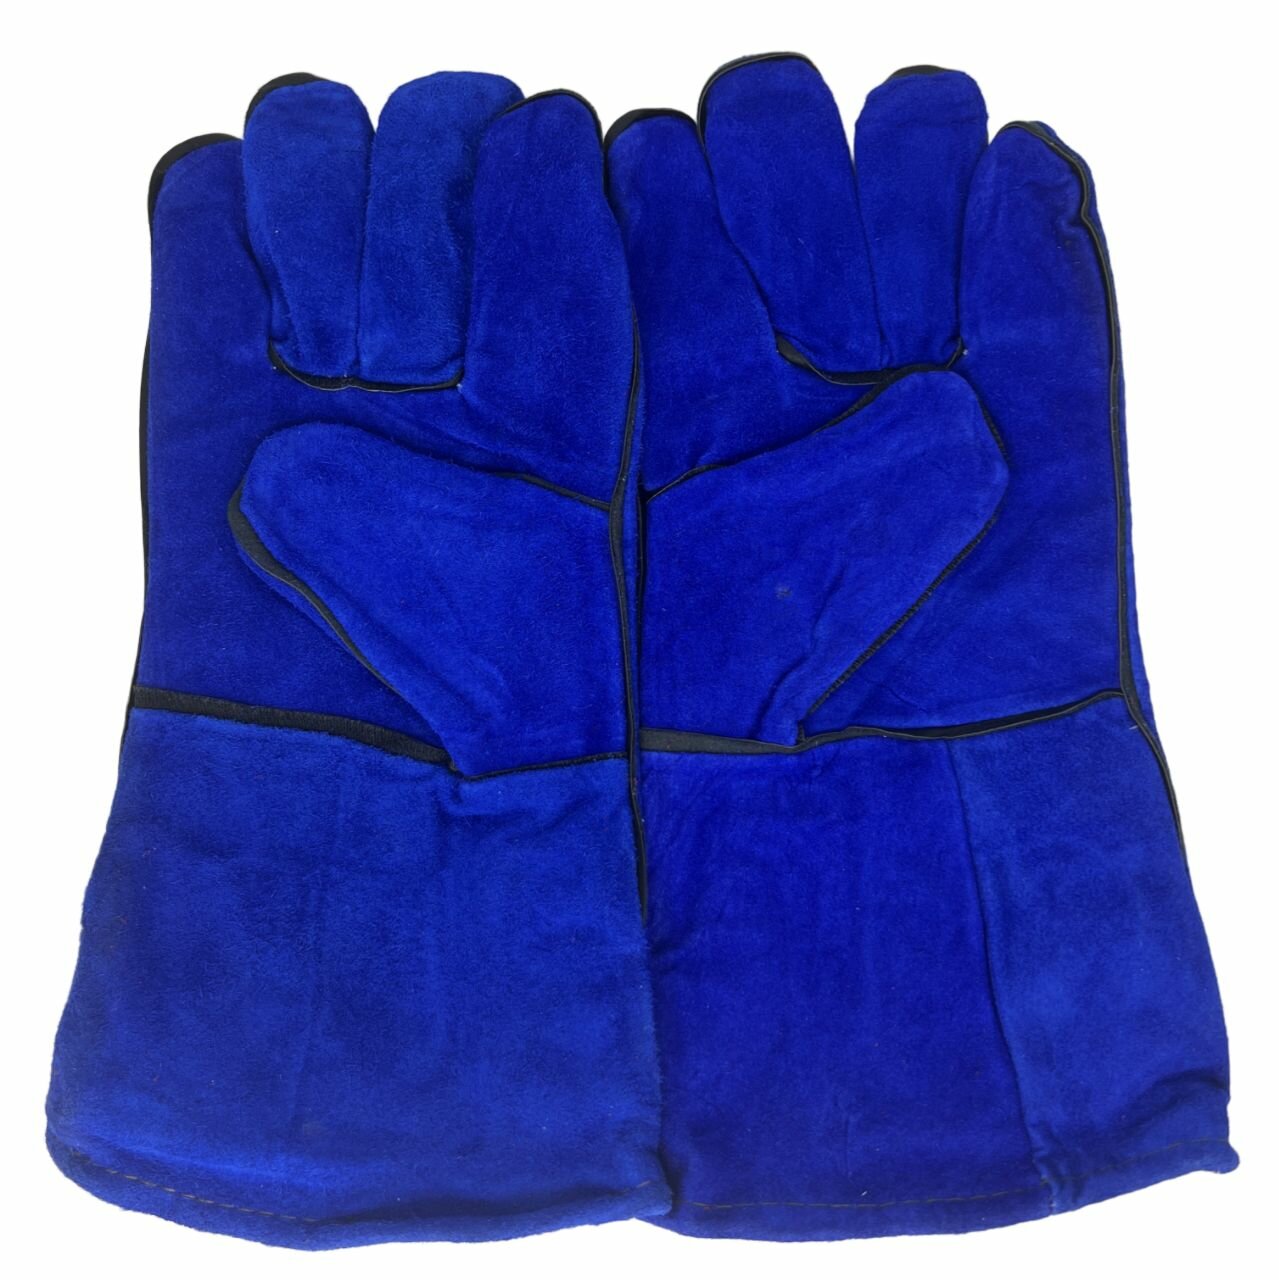 Краги сварщика X-PERT спилковые пятипалые Синие / перчатки рабочие жаропрочные